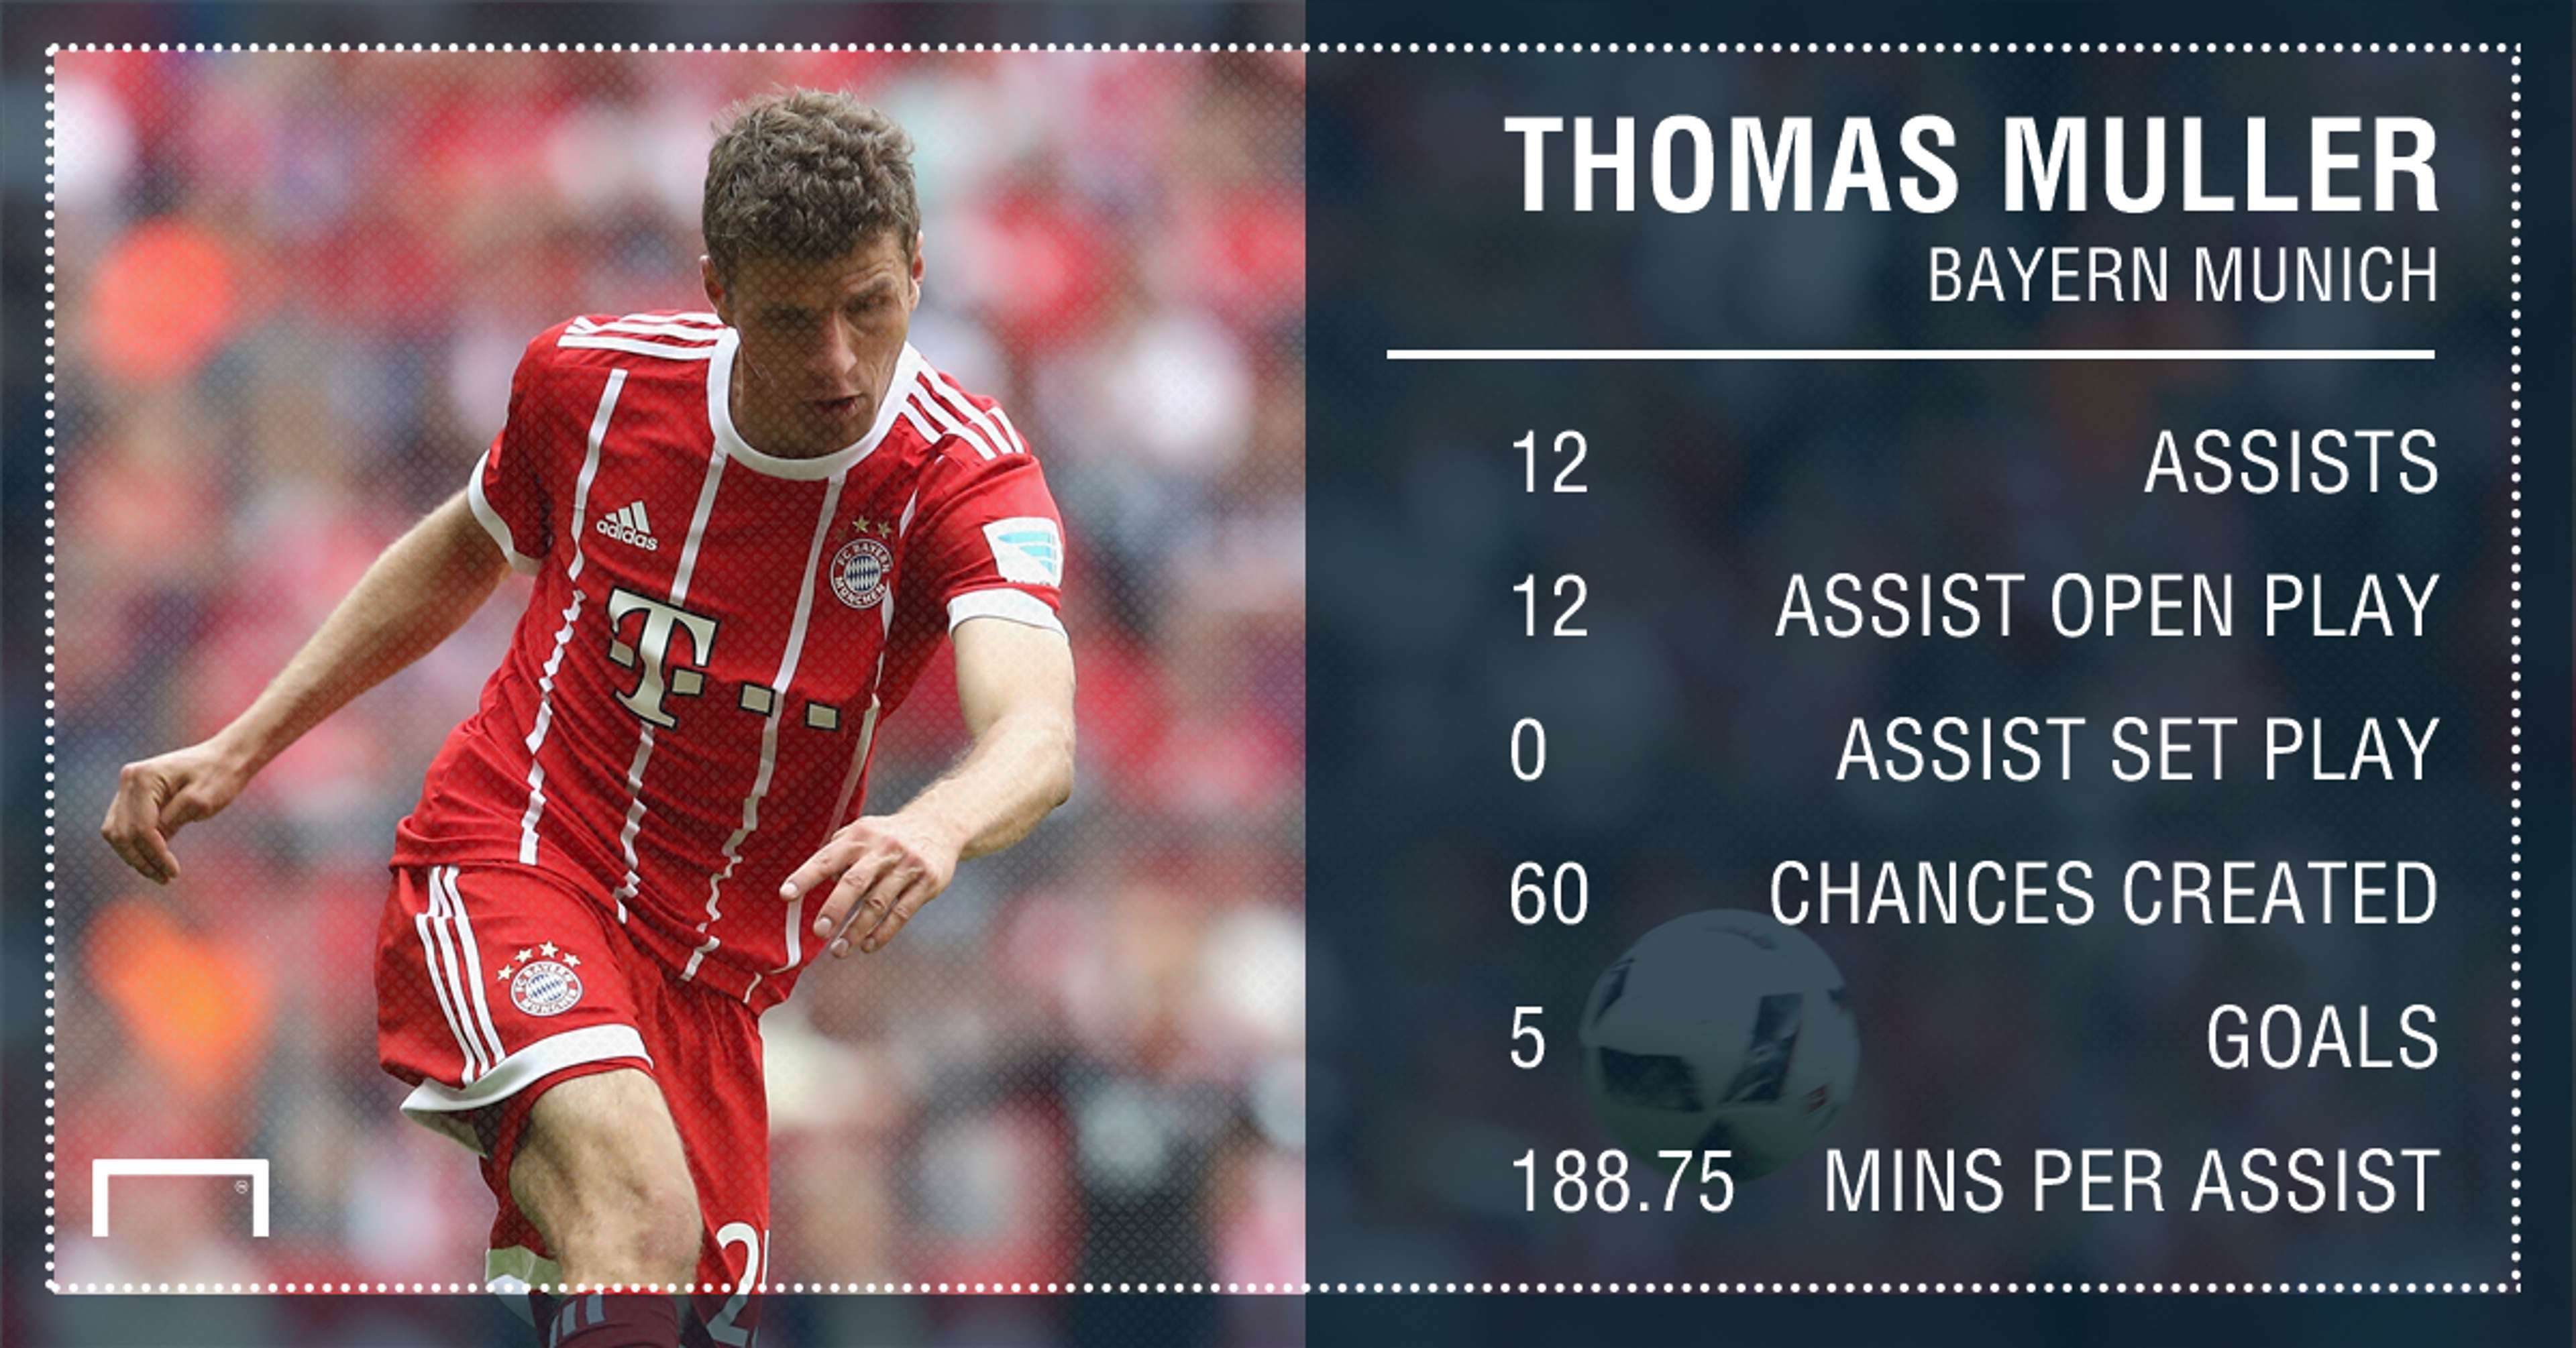 Thomas Muller Bayern Munich assists 16 17